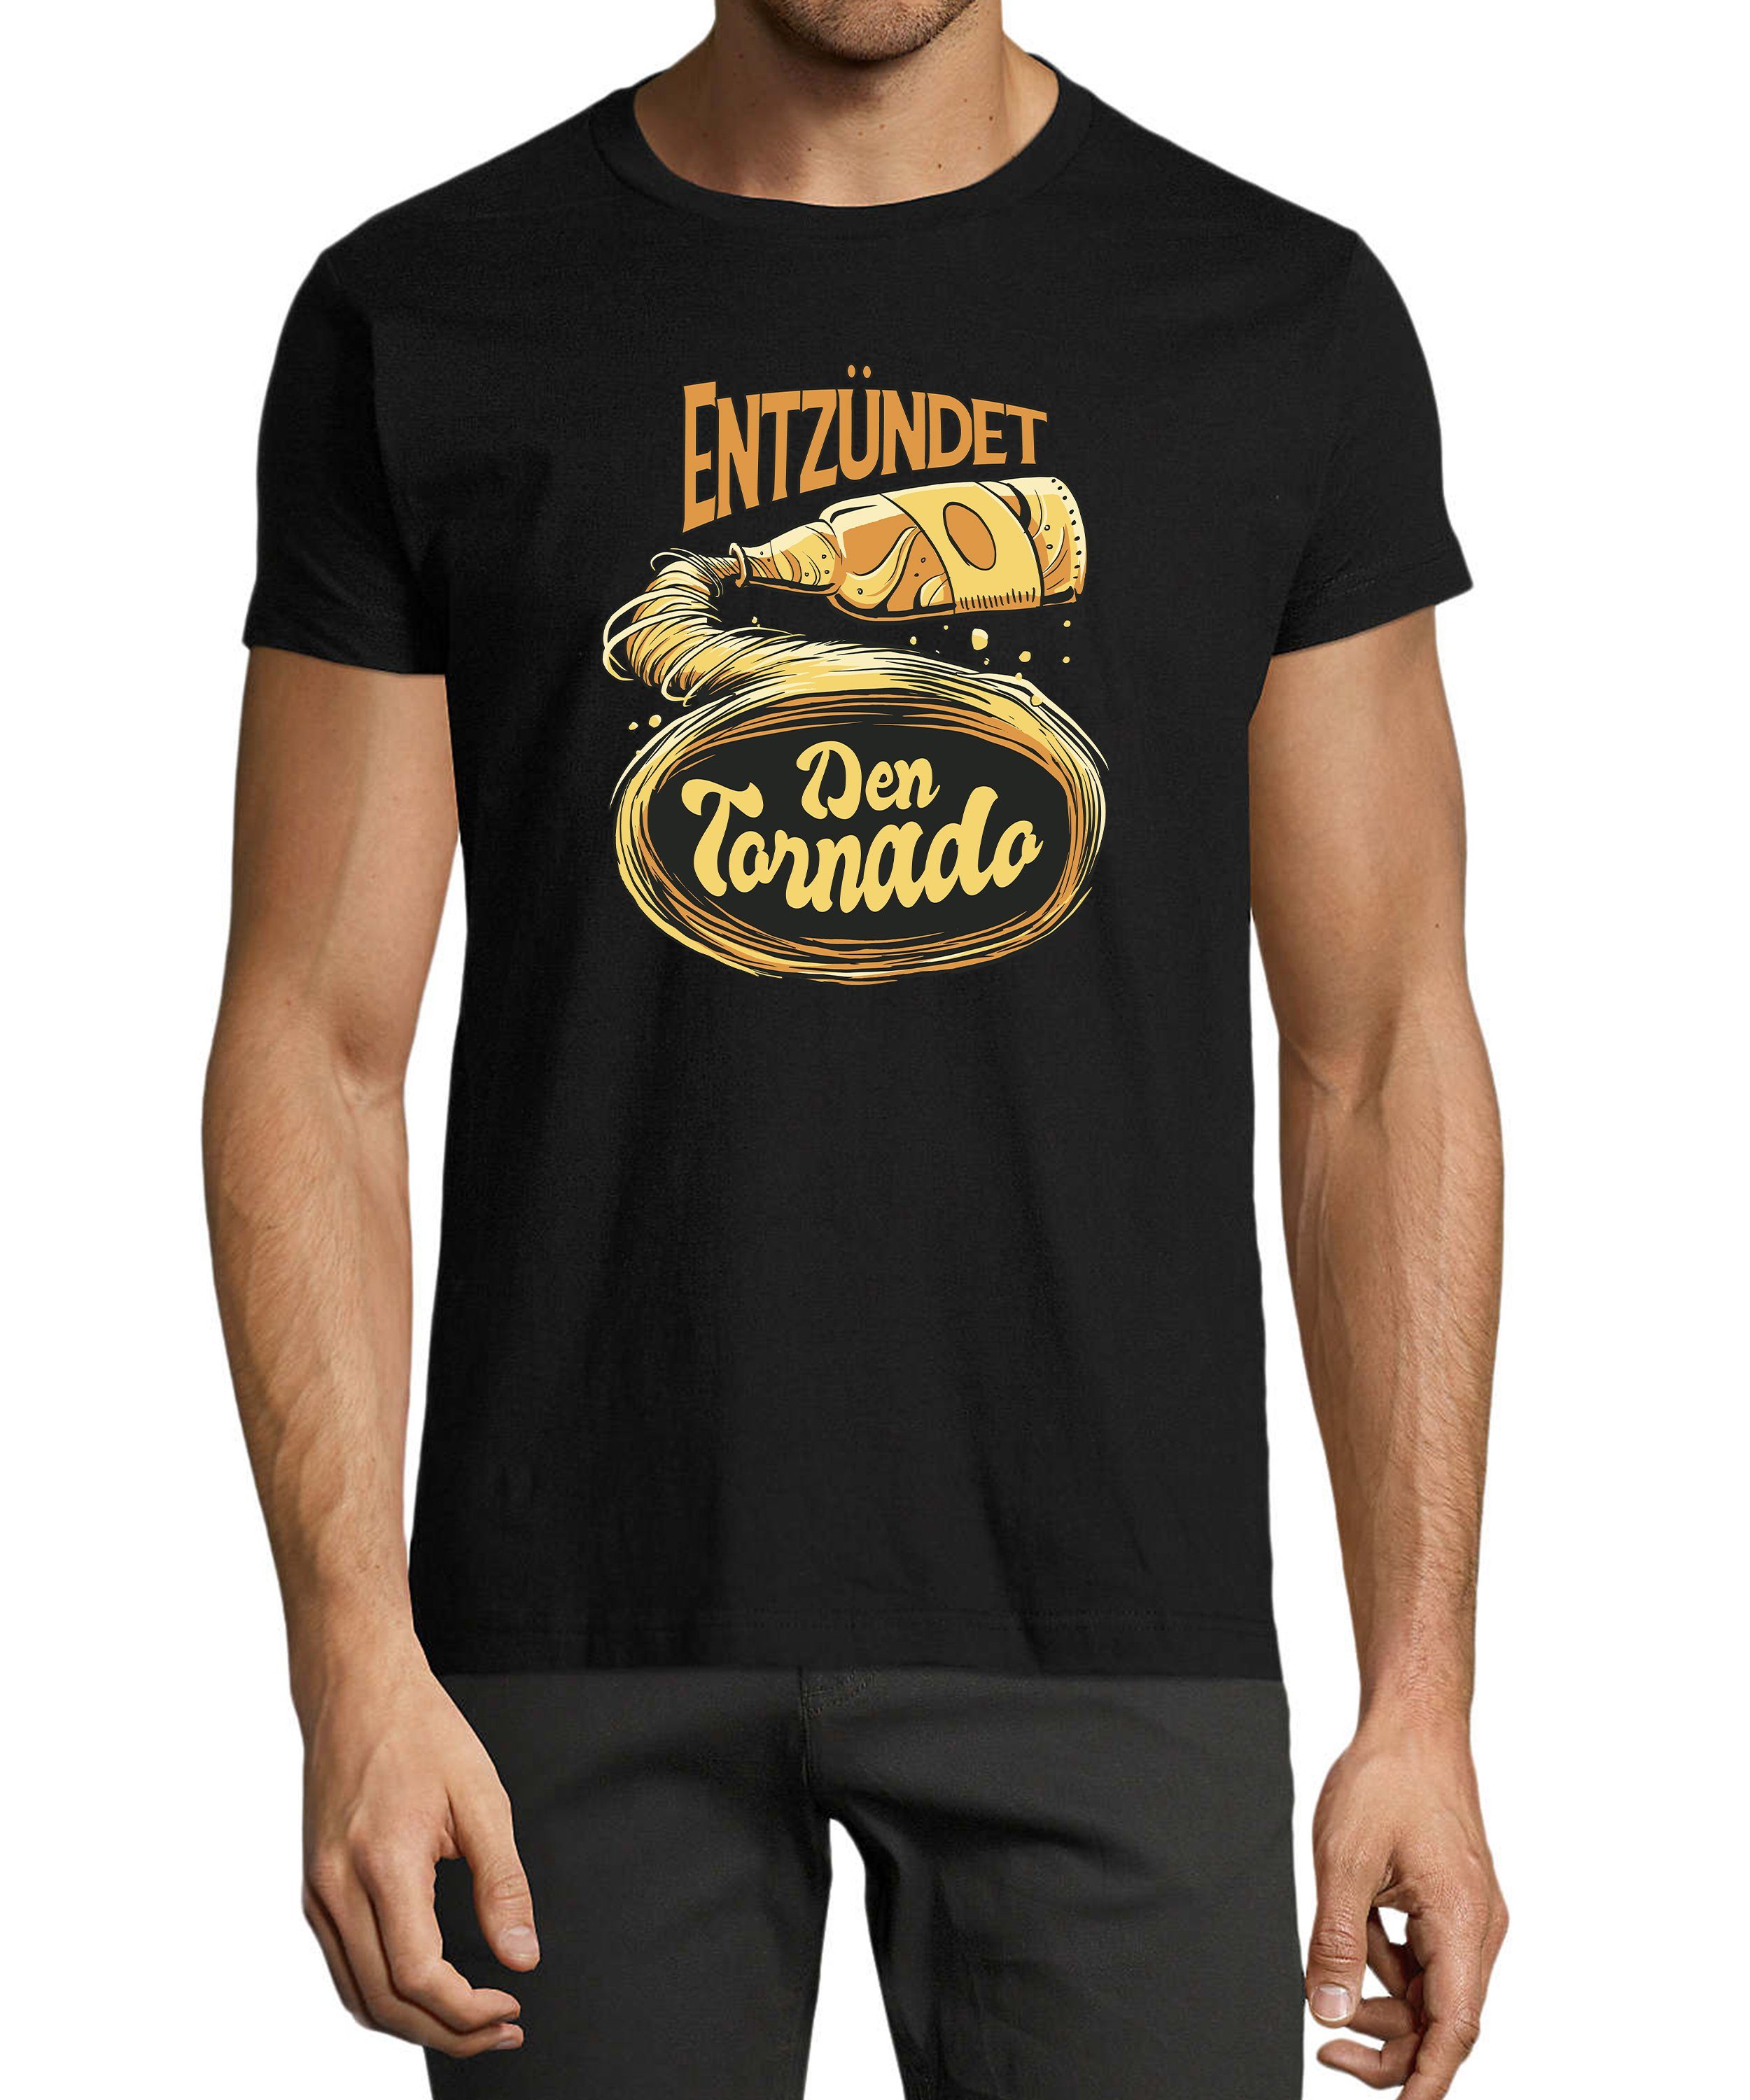 MyDesign24 T-Shirt Herren Fun Regular schwarz mit Shirt Fit, Oktoberfest Print - Tornado Trinkshirt Aufdruck i302 Baumwollshirt Entzündet den